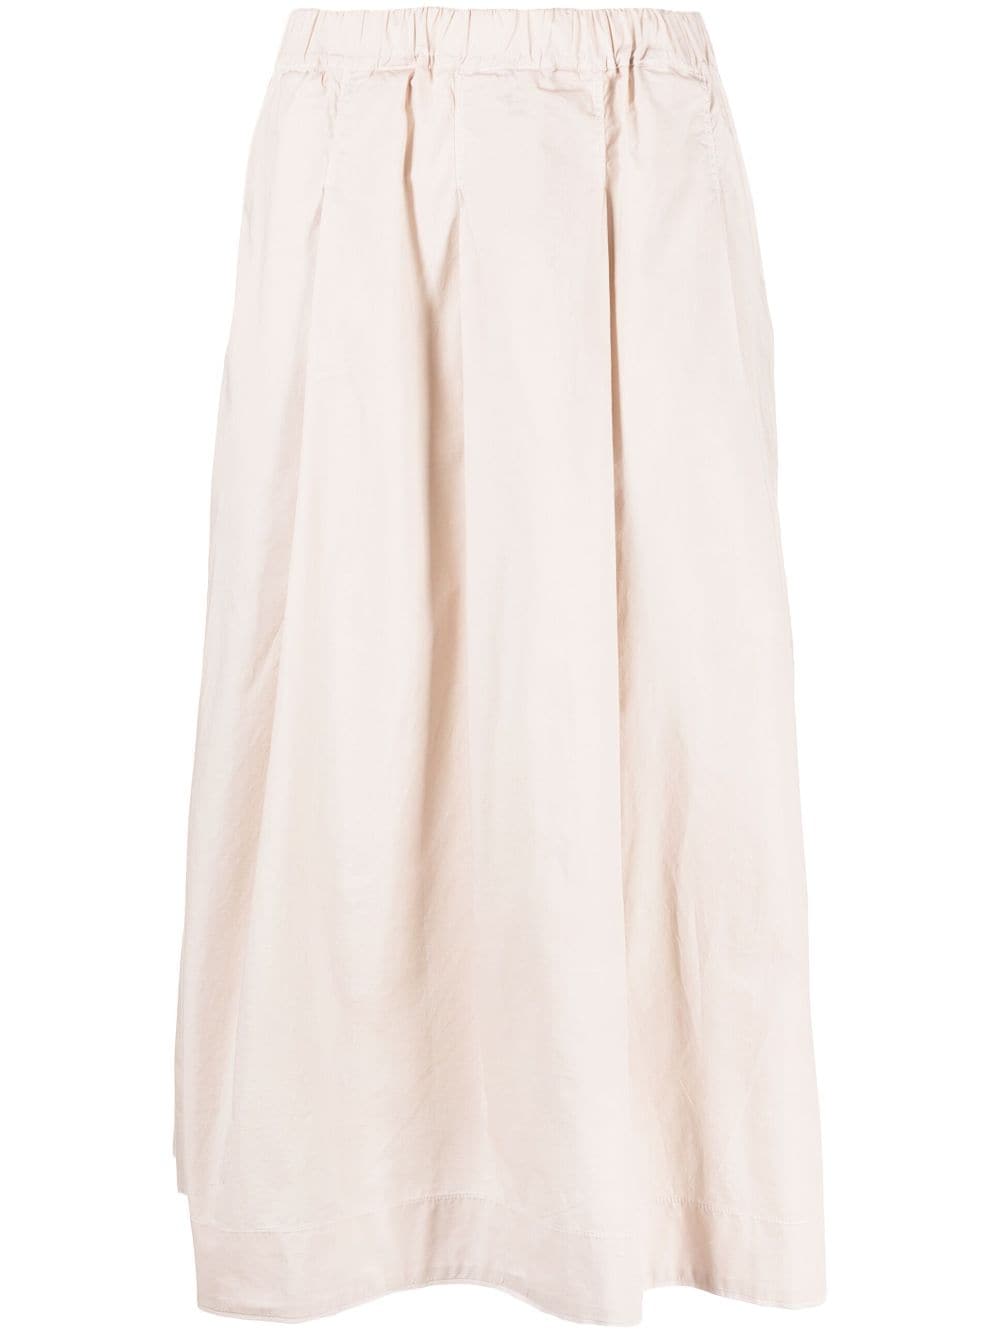 Kristensen Du Nord high-waist cotton skirt - Pink